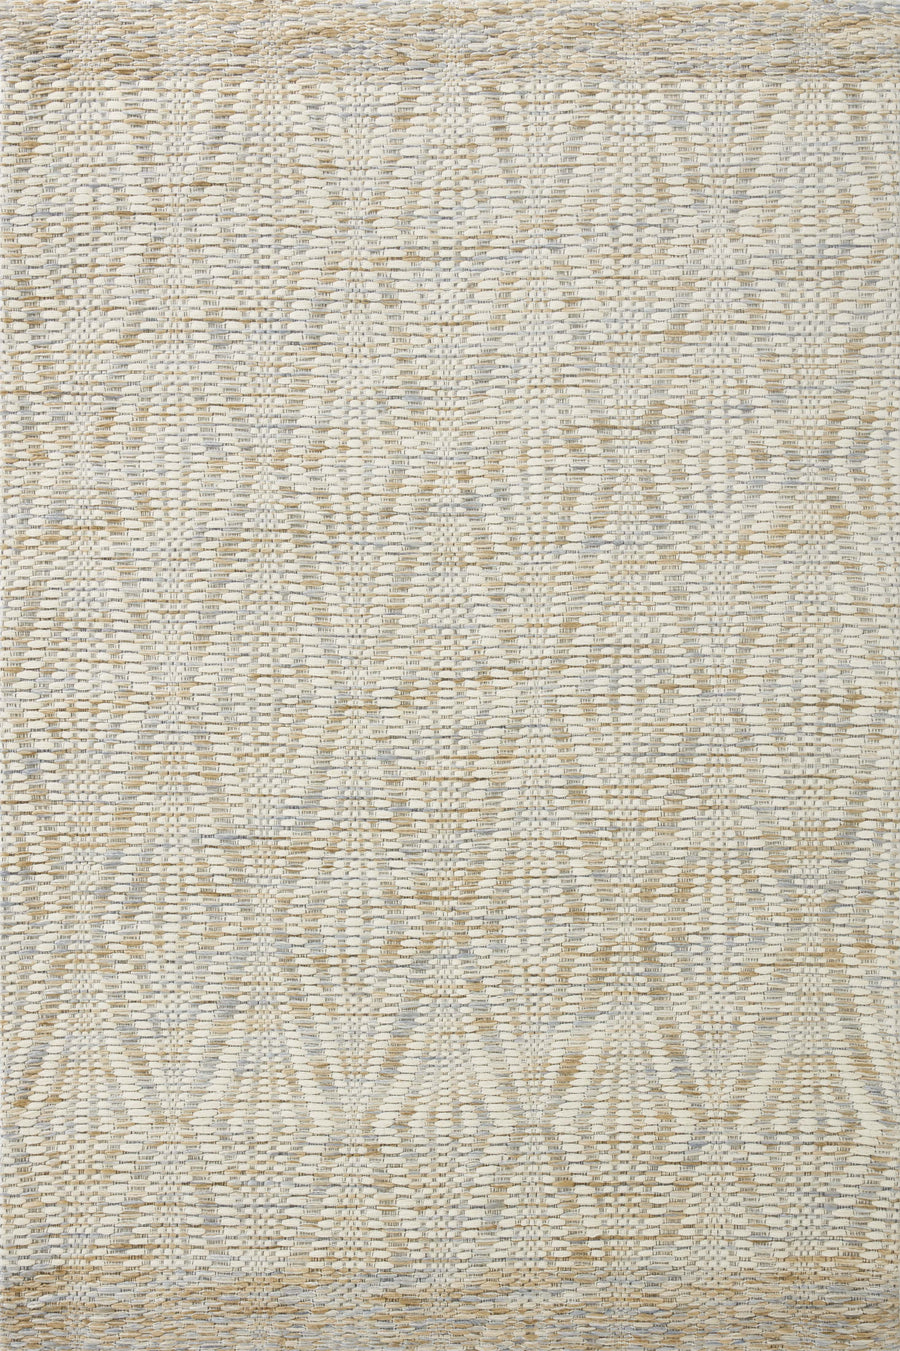 Loloi Kenzie Ivory / Sand 11'-6" x 15' Area Rug